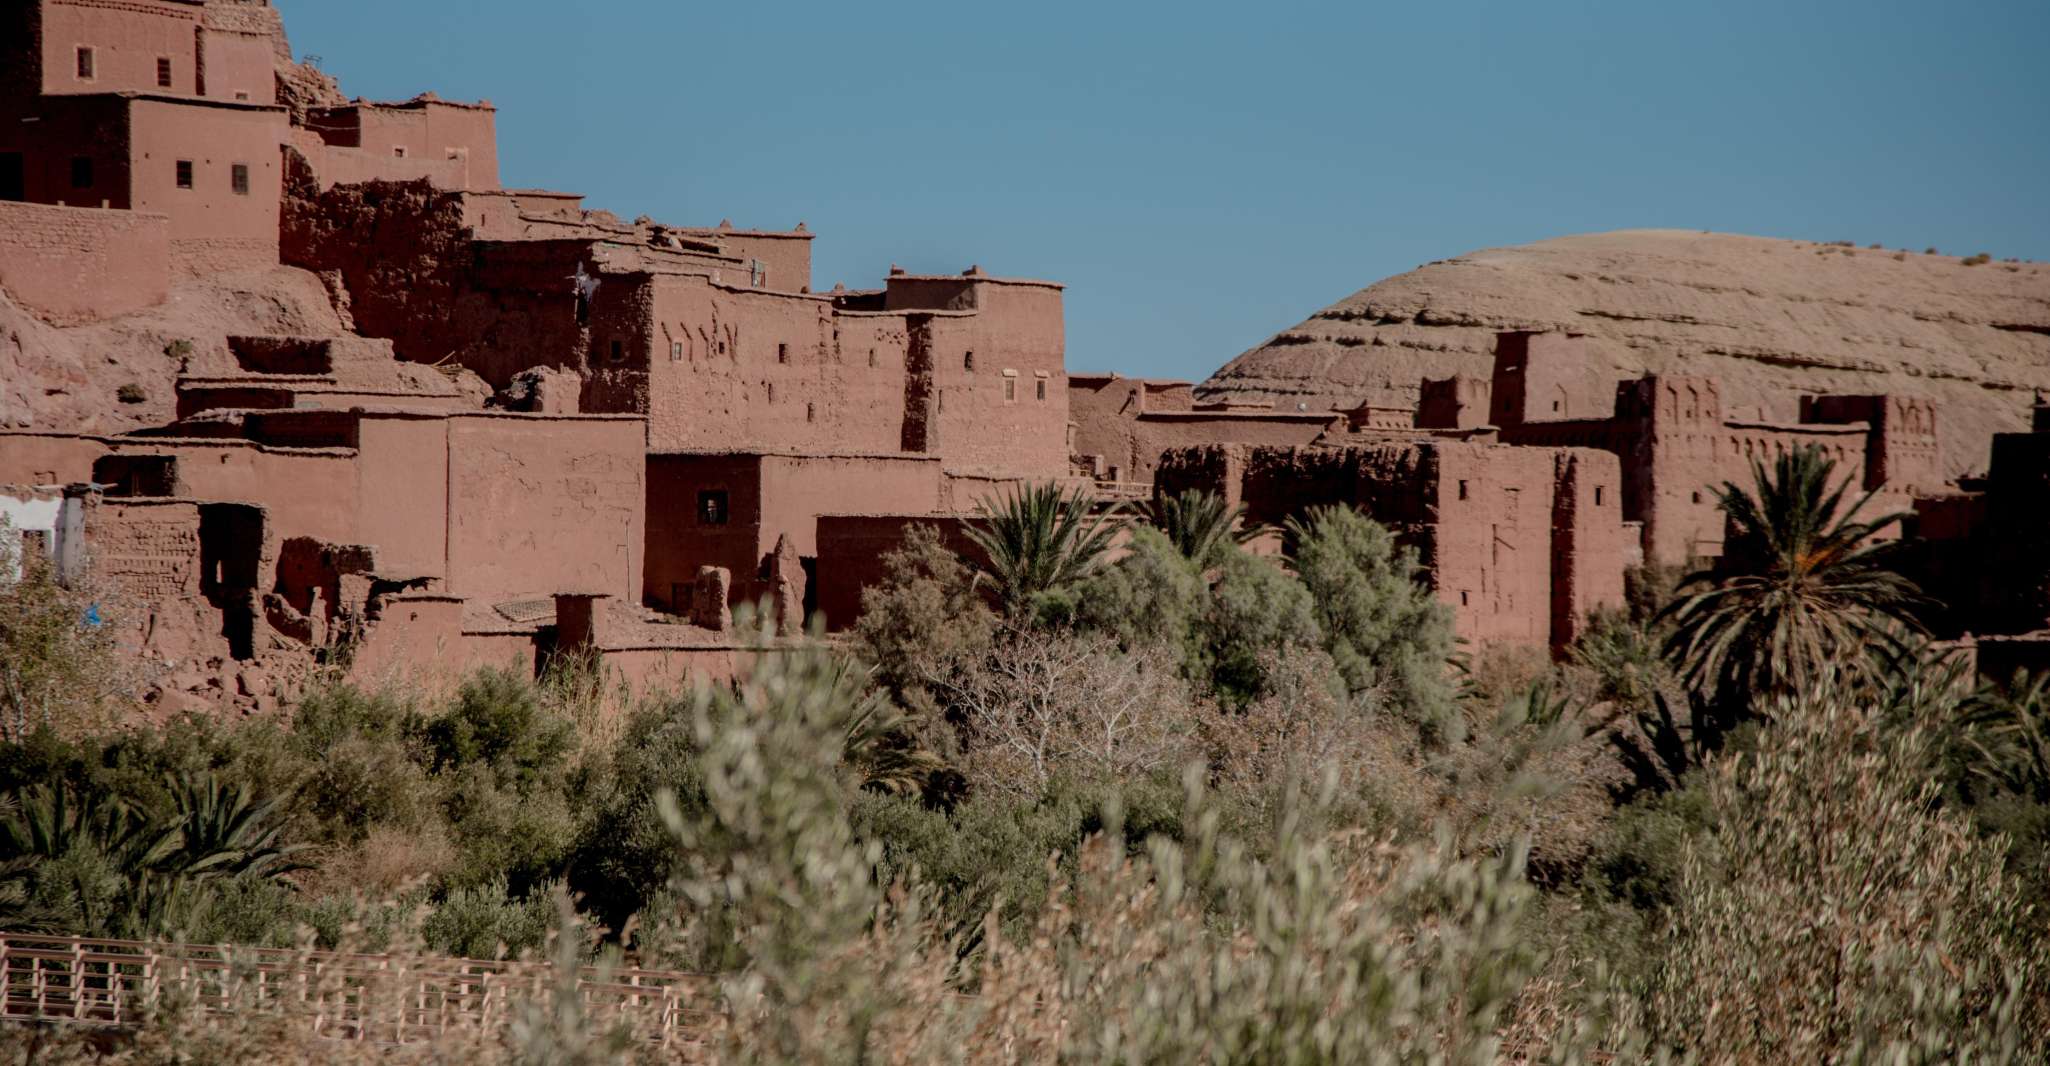 From Fes to Marrakech via Merzouga desert 3-day tour - Housity